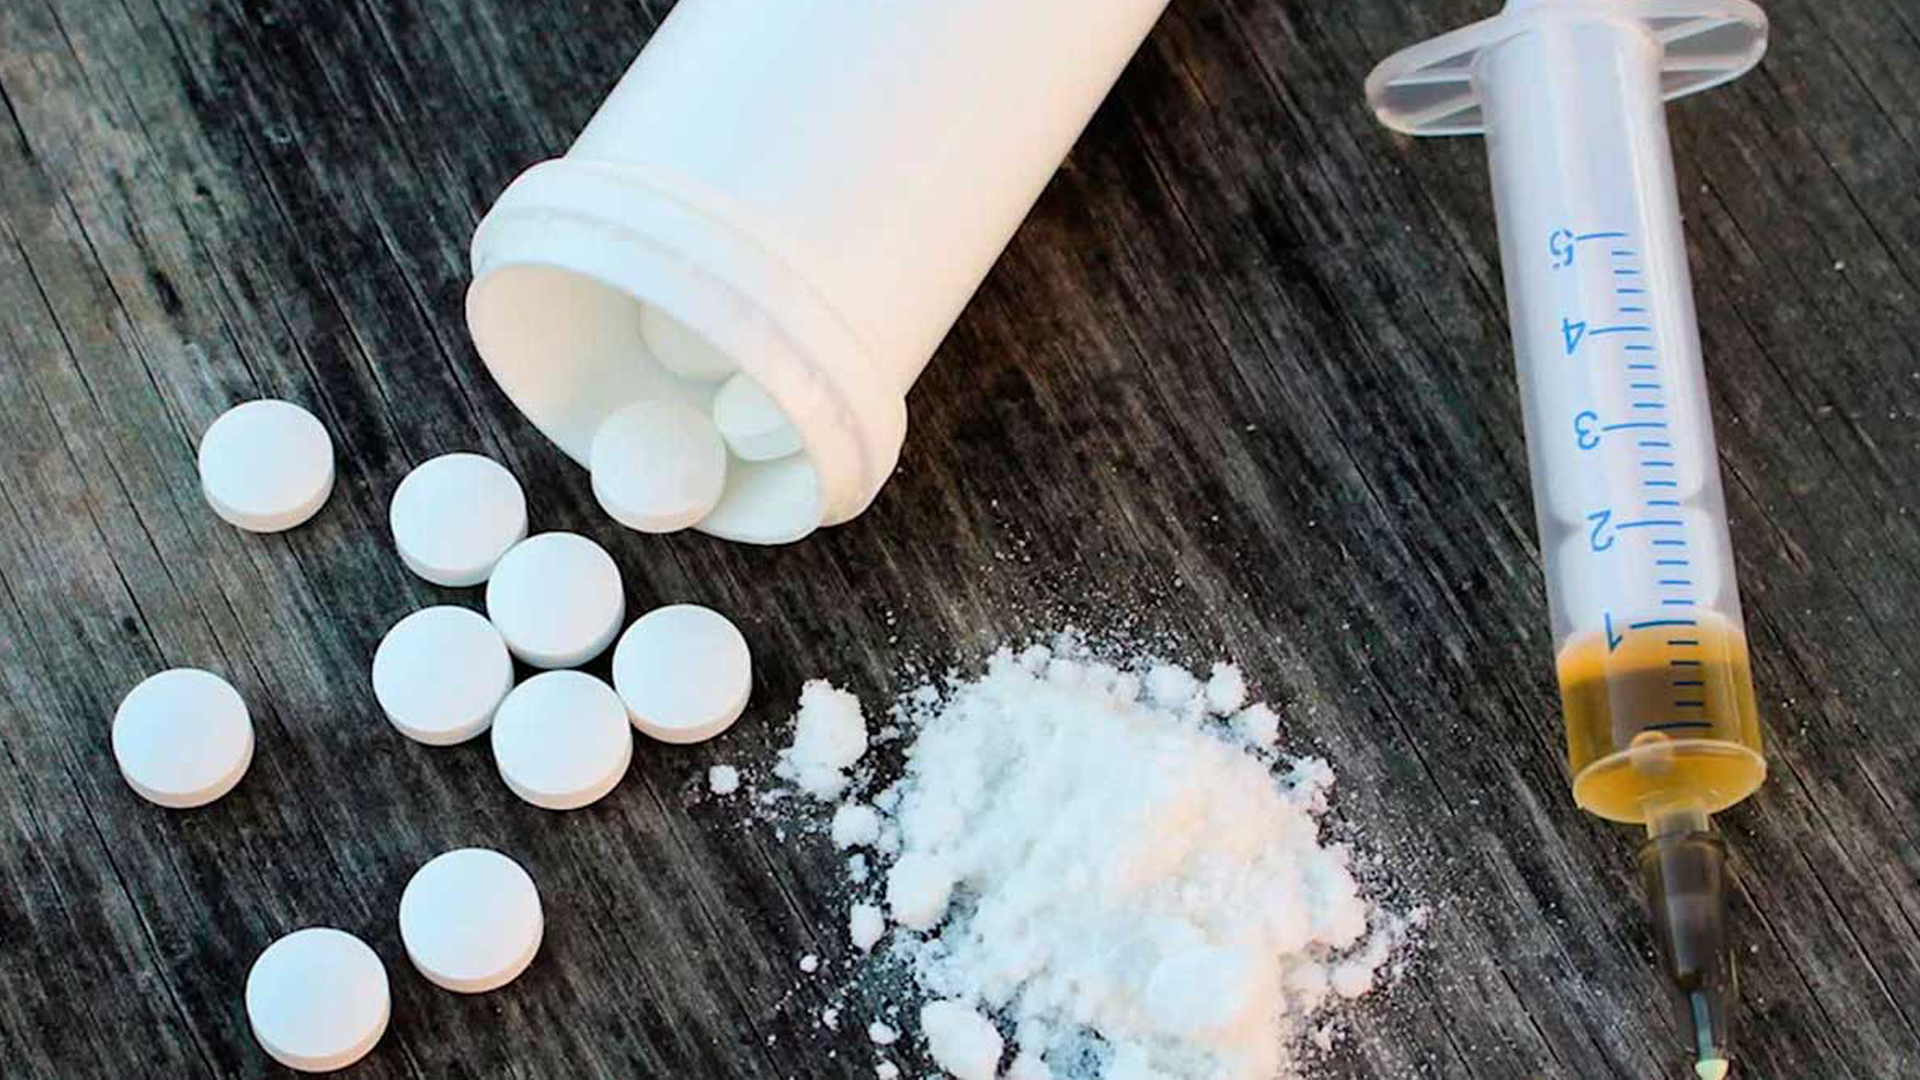 Alerta en Colombia por comercialización de fentanilo, la ‘droga zombie’ que ha causado miles de muertes en EE. UU.